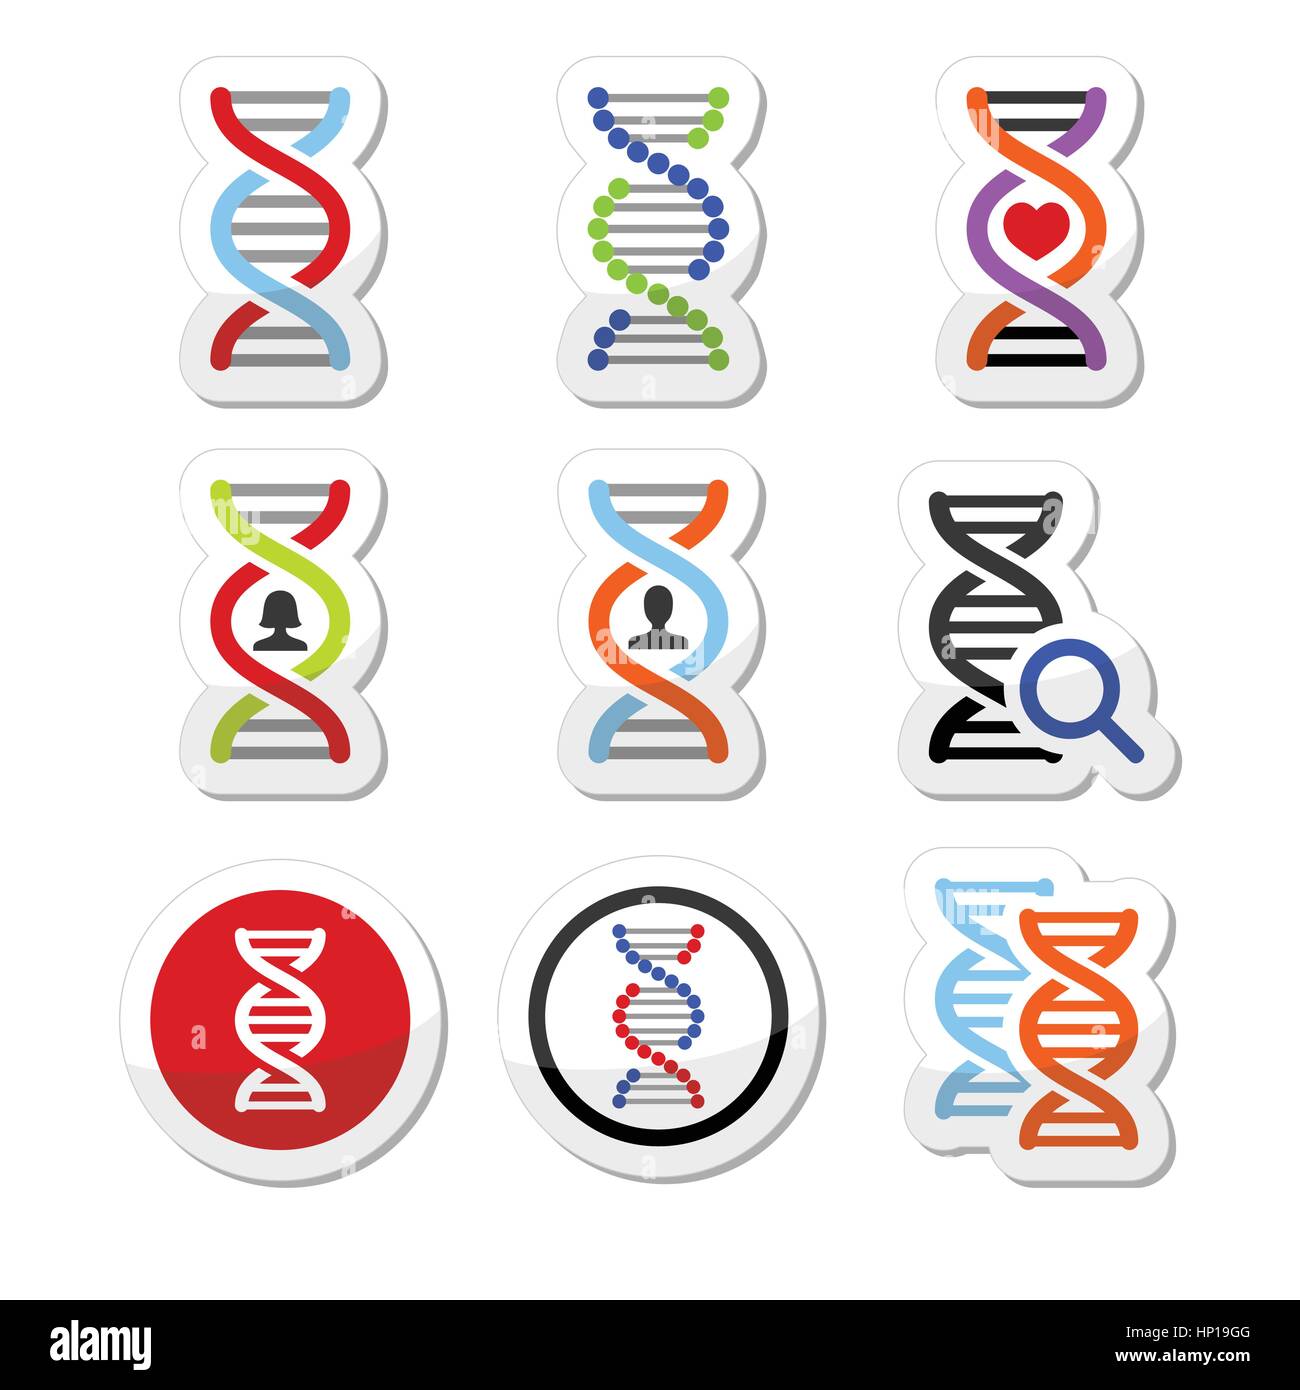 La génétique, l'ADN vector icons set Illustration de Vecteur